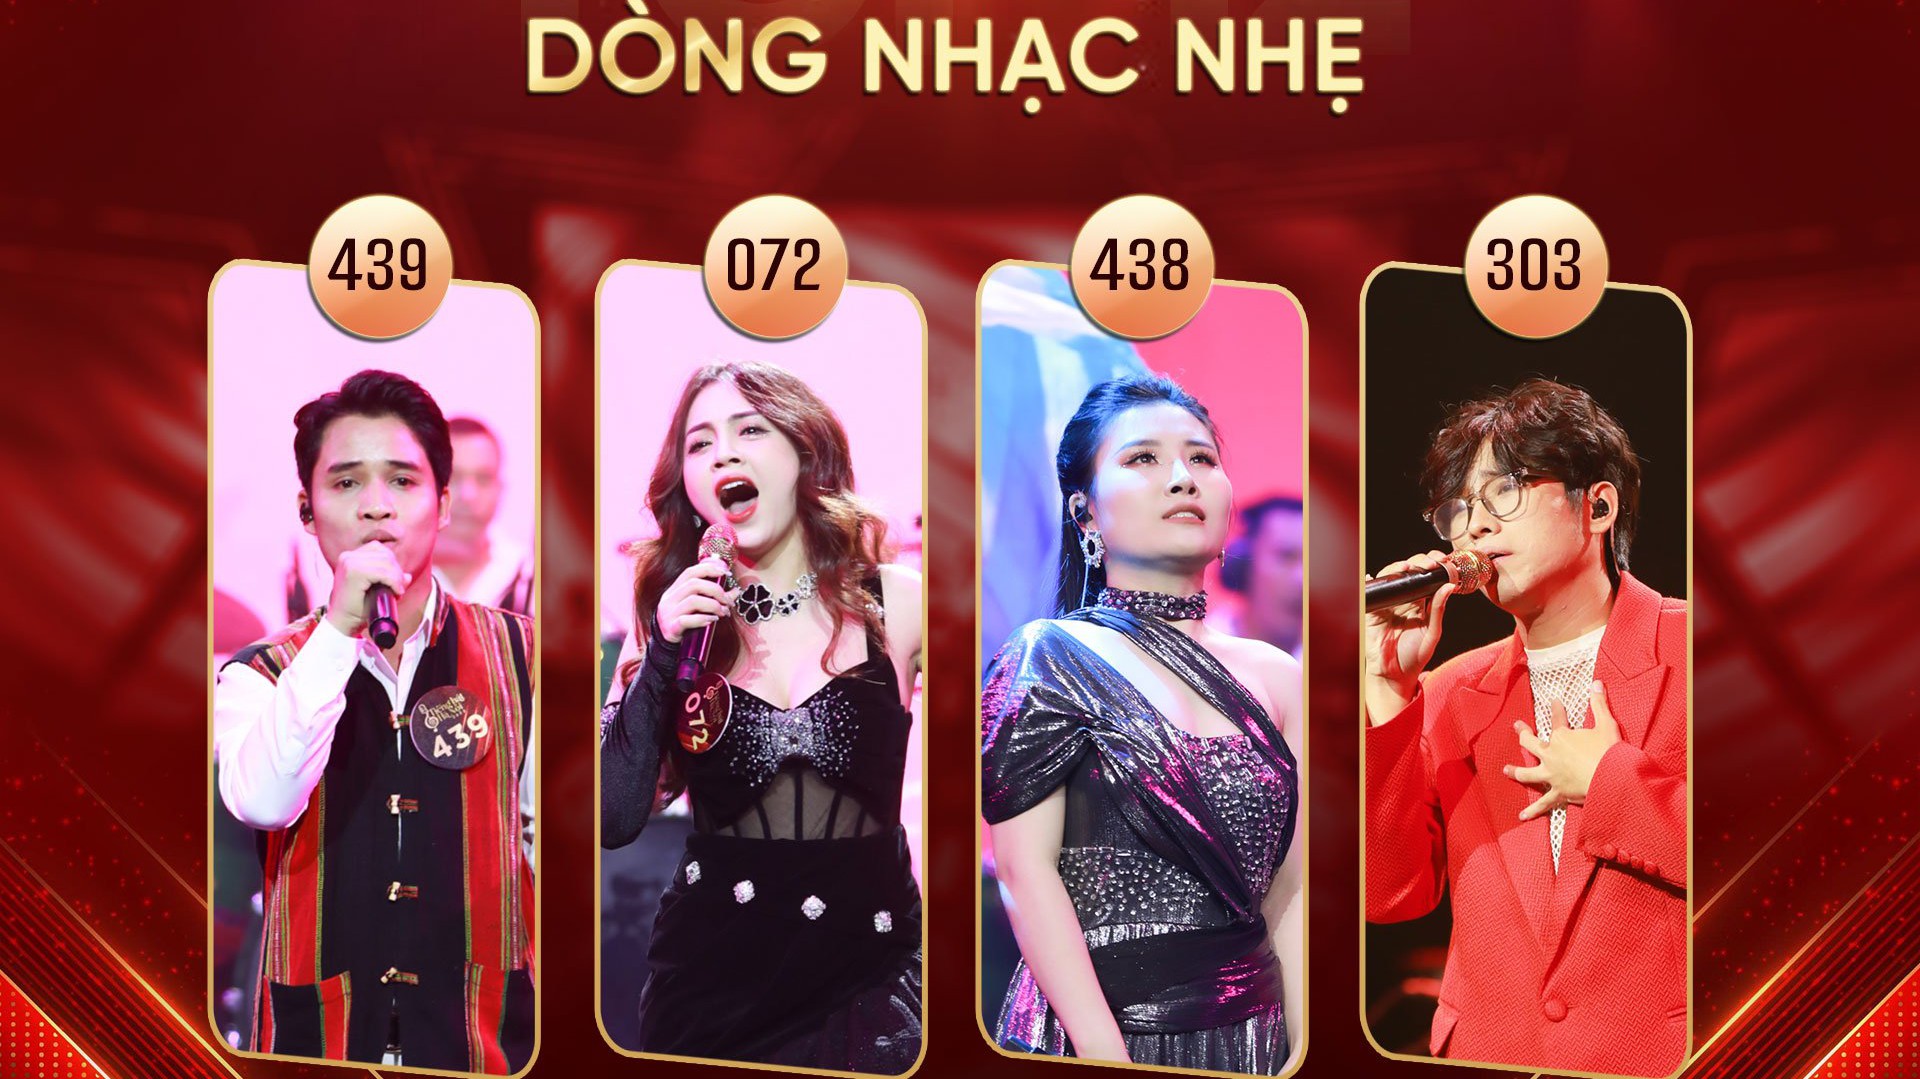 Chung kết 'Tiếng hát Hà Nội': 12 gương mặt sáng giá tranh tài